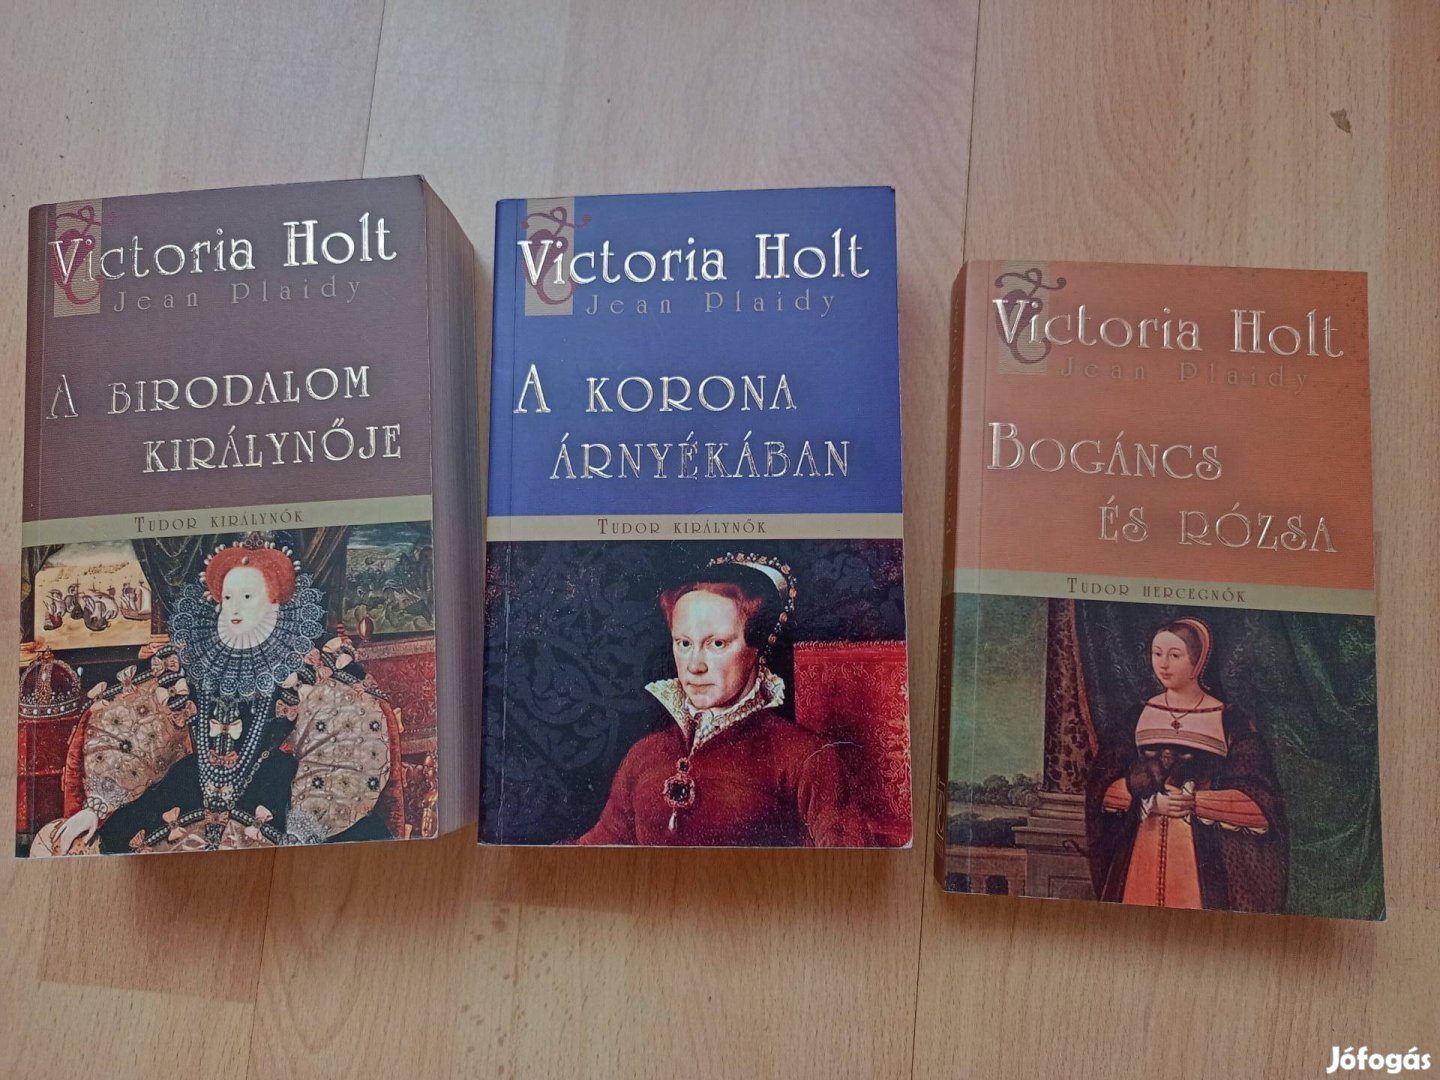 Victoria Holt Tudor királynők 3 kötet 